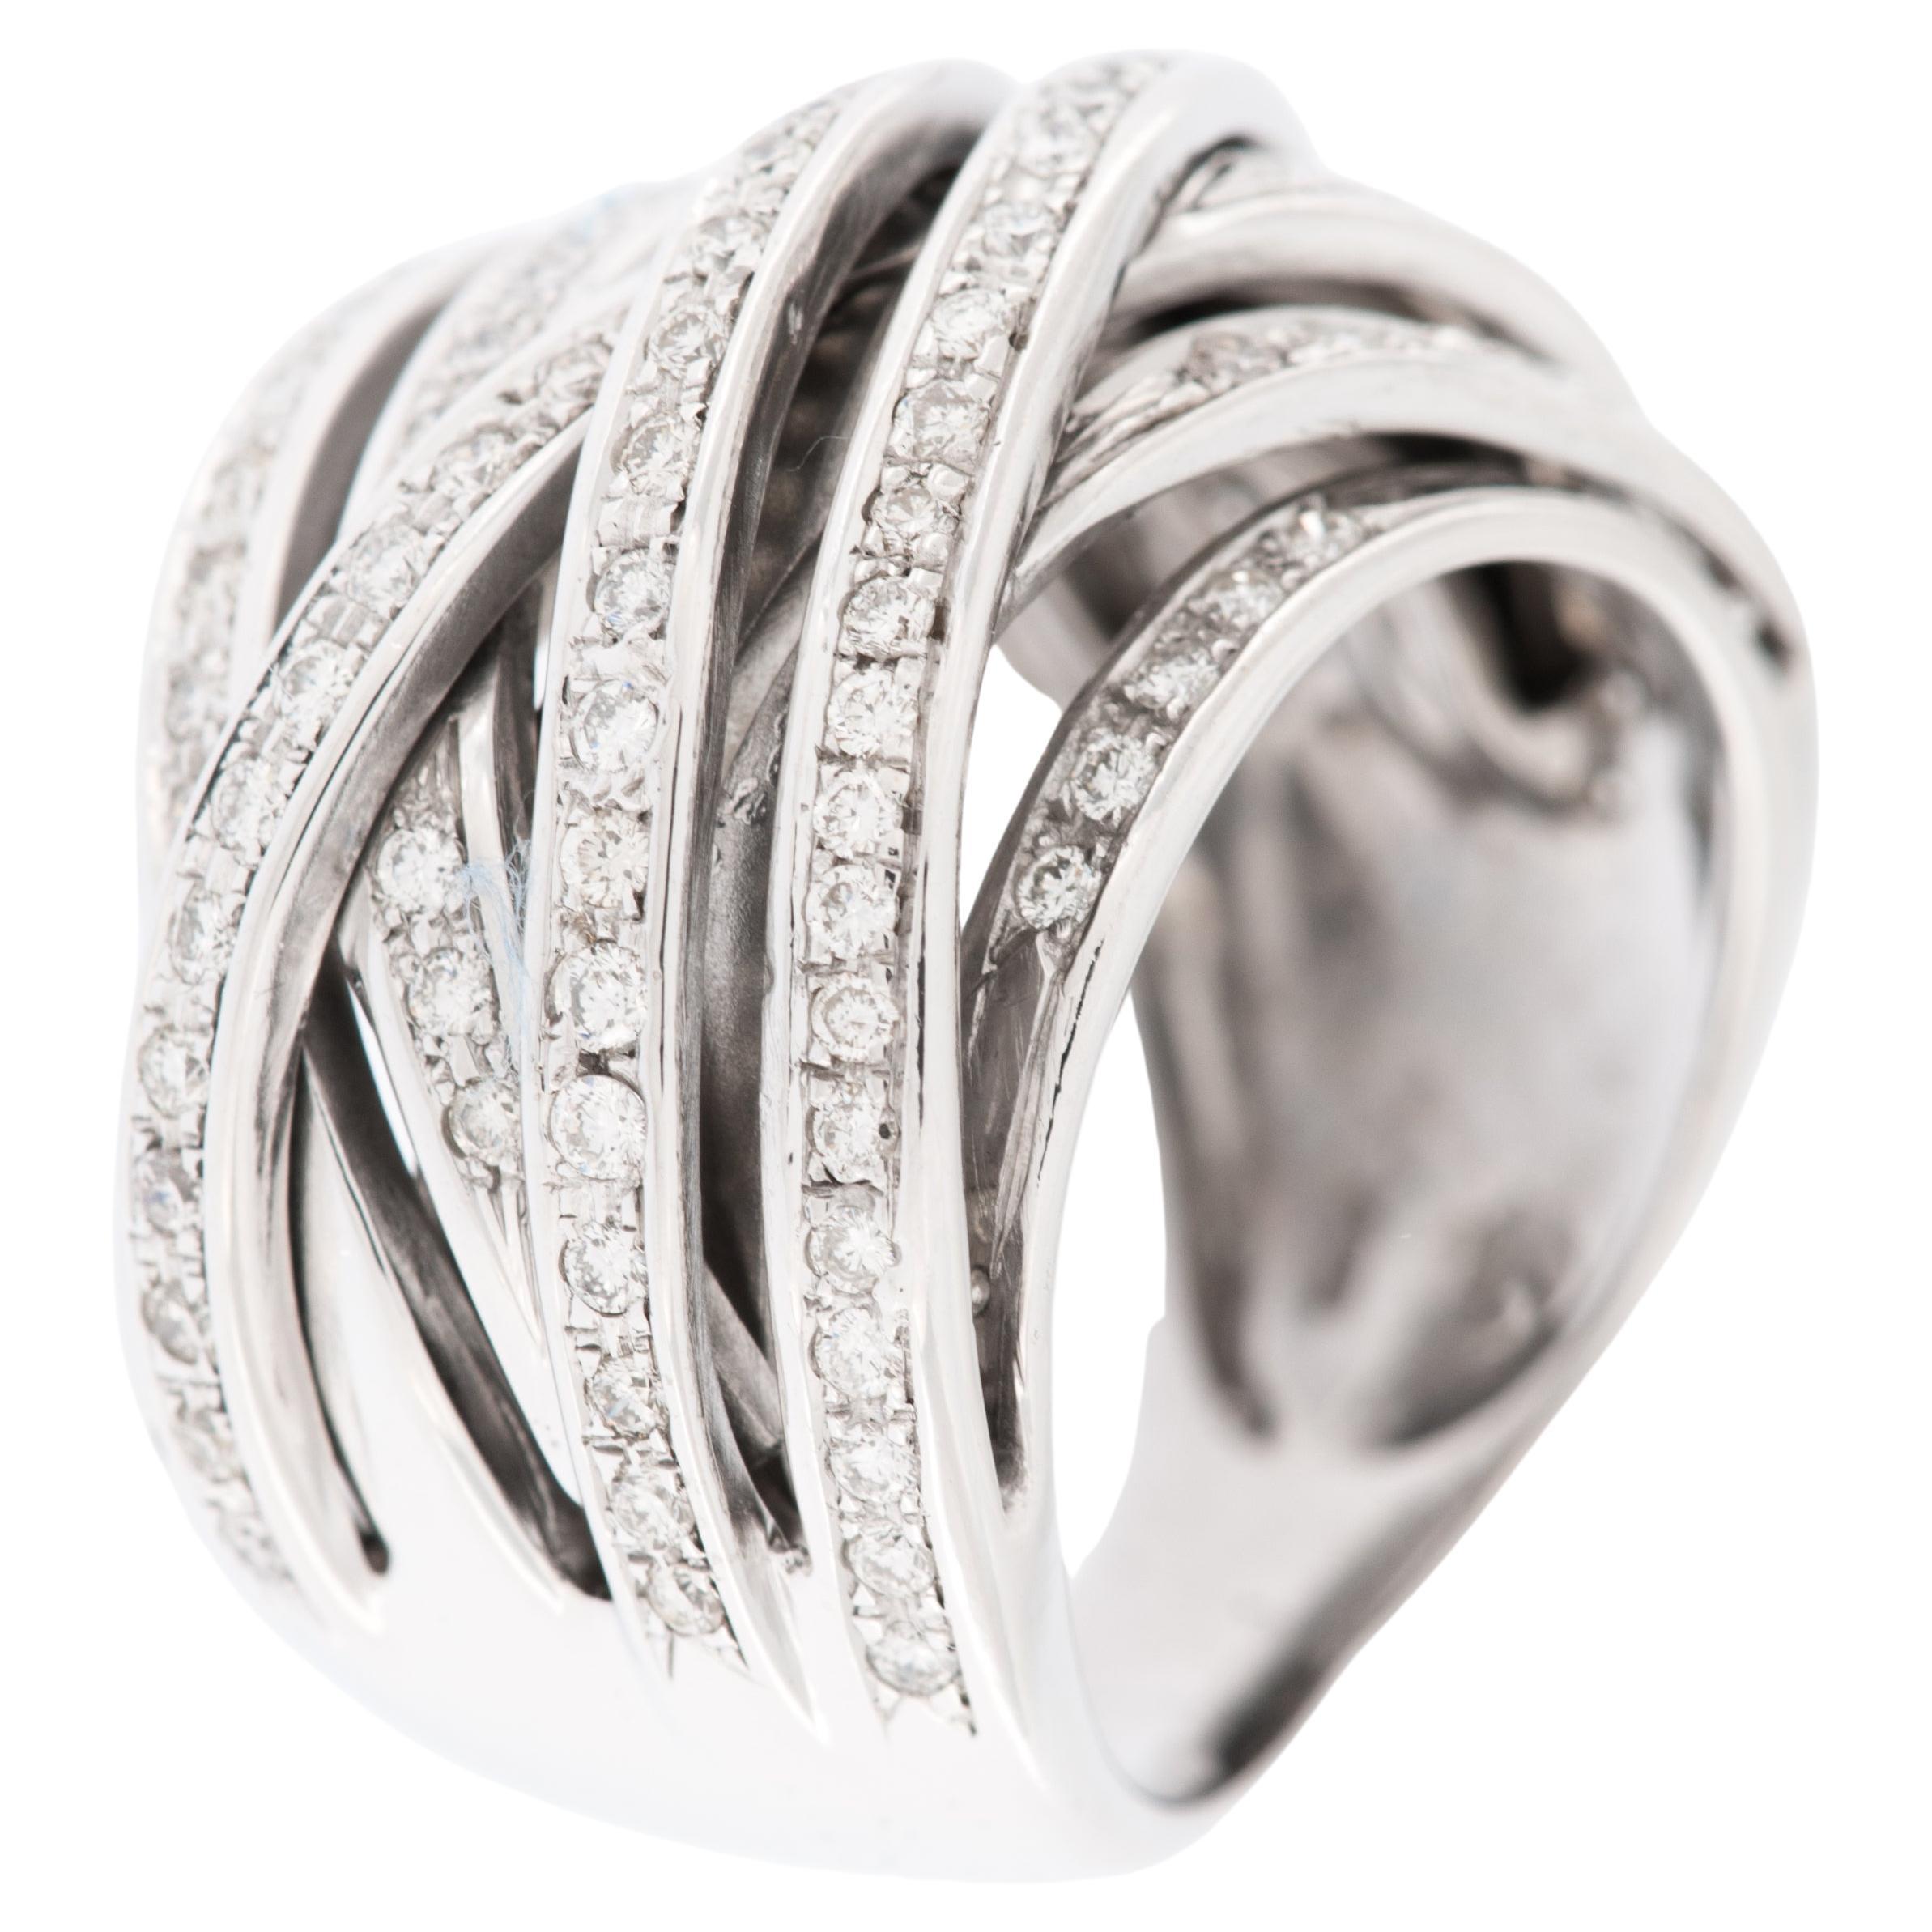 Fashion 18 karat White Gold Italian Ring with Diamonds